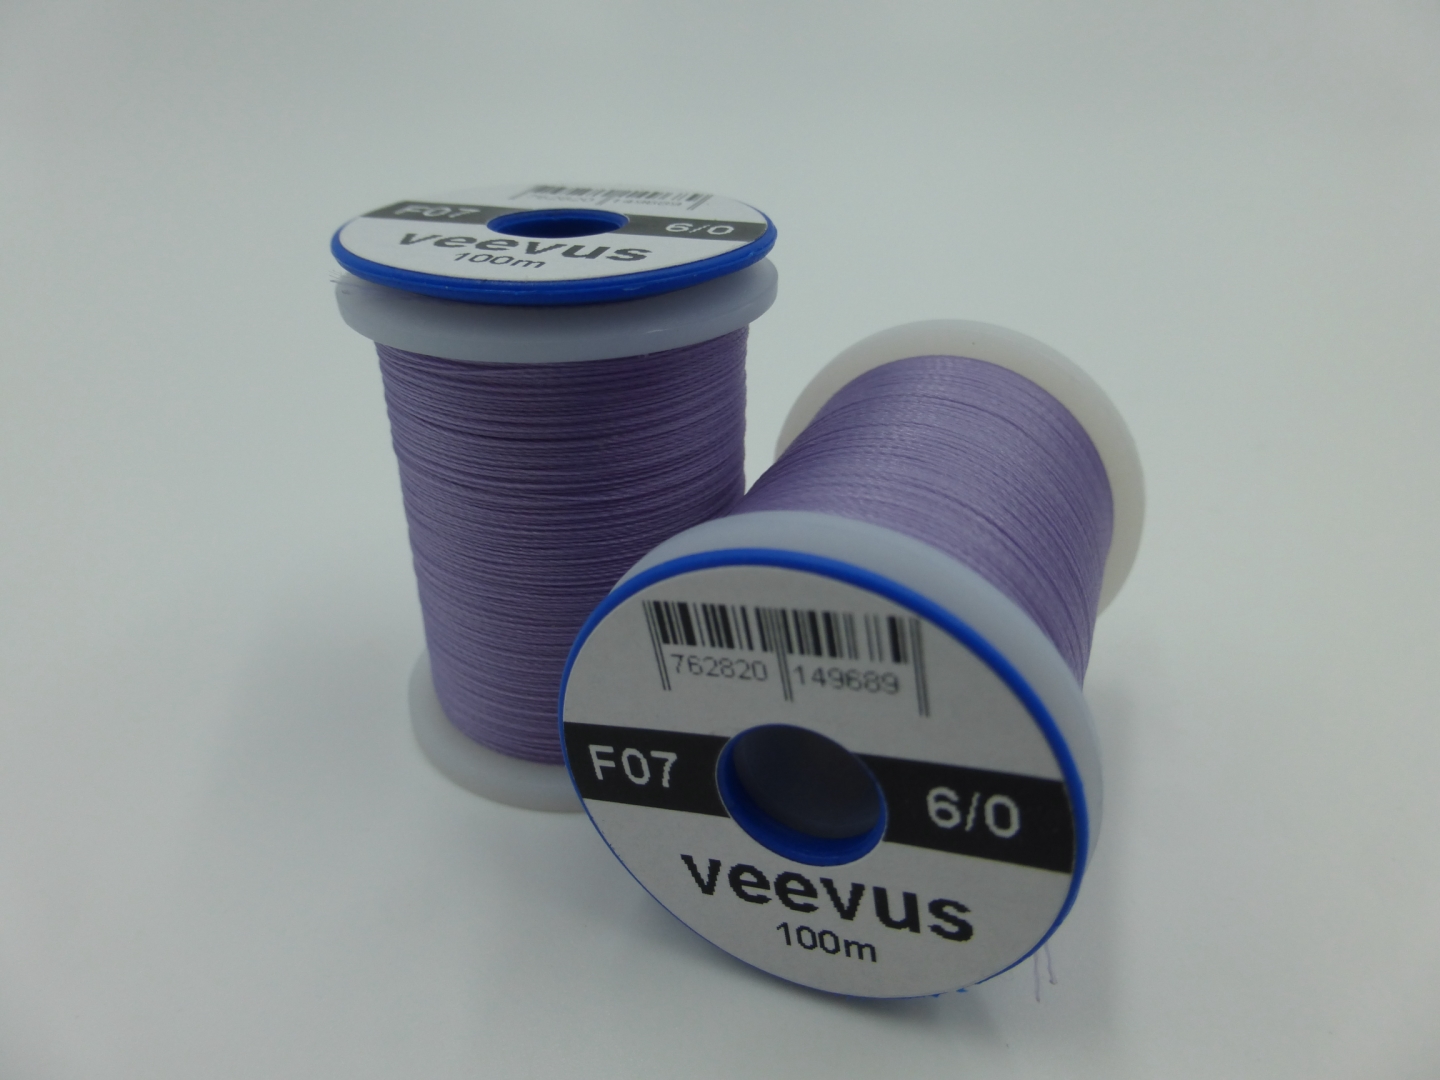 Veevus 6/0 Lilac F07